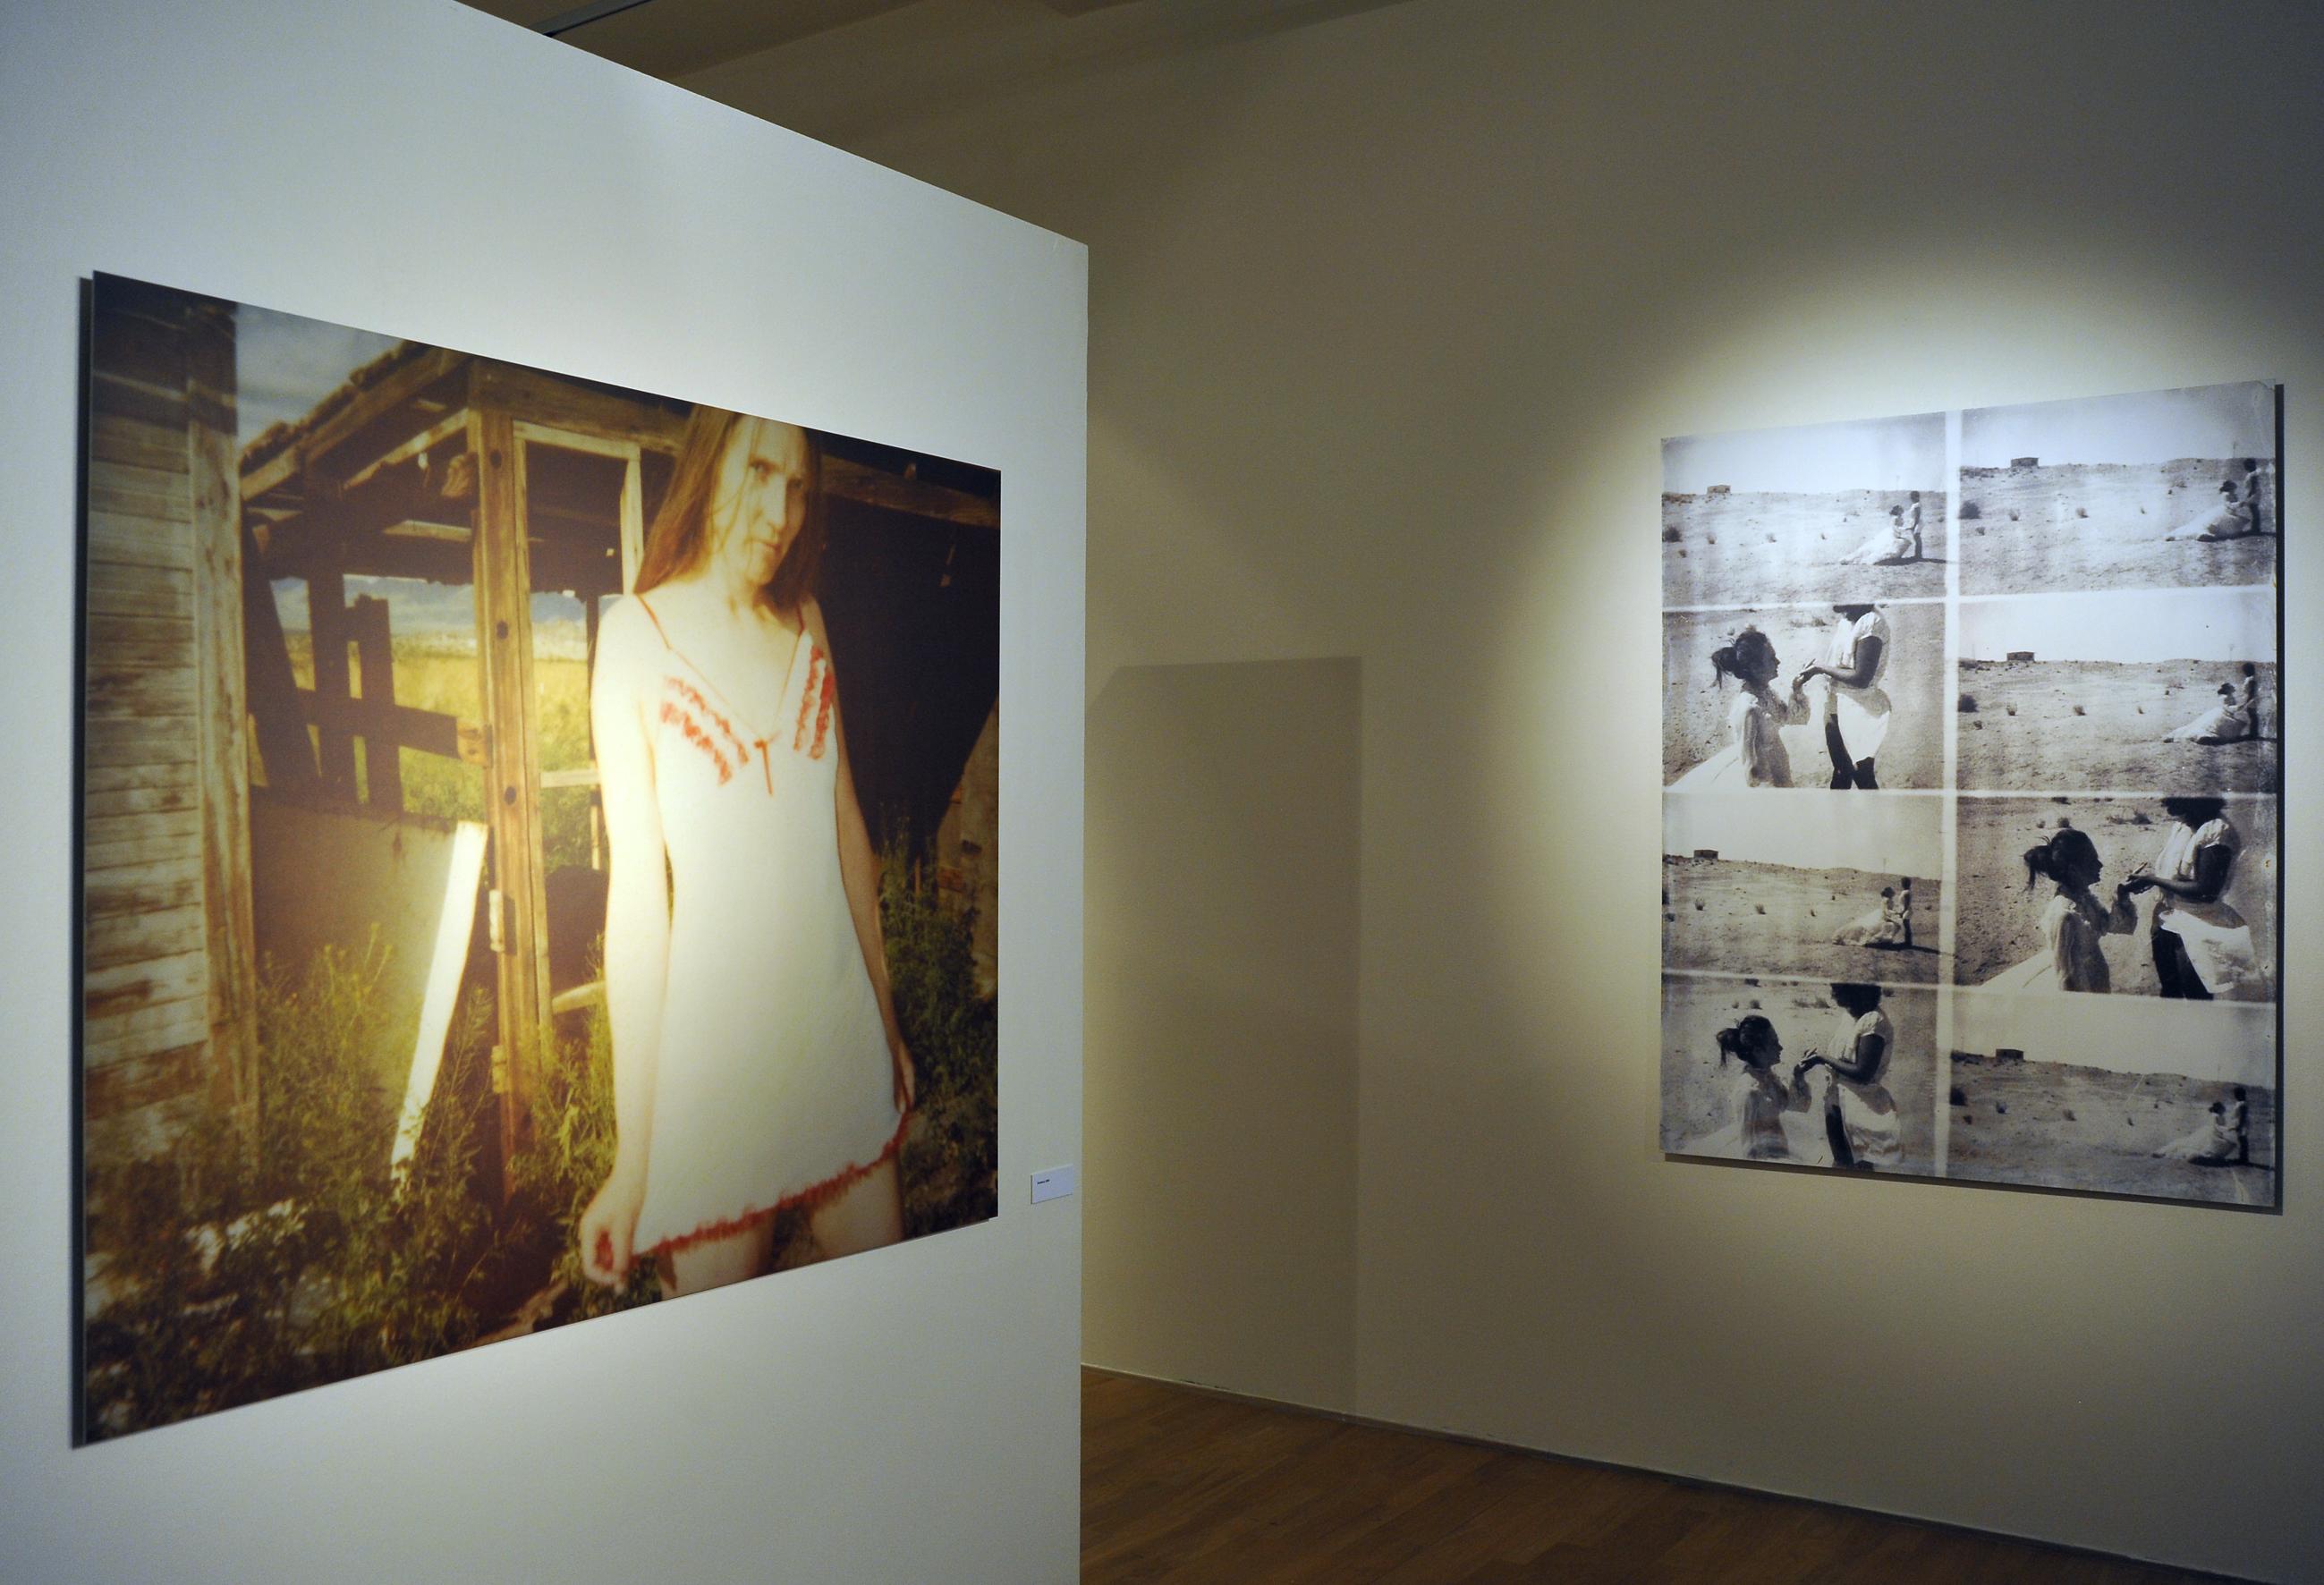 Stevie's new Dress (Sidewinder) - 21st Century, Polaroid, Contemporary, Women - Photograph by Stefanie Schneider